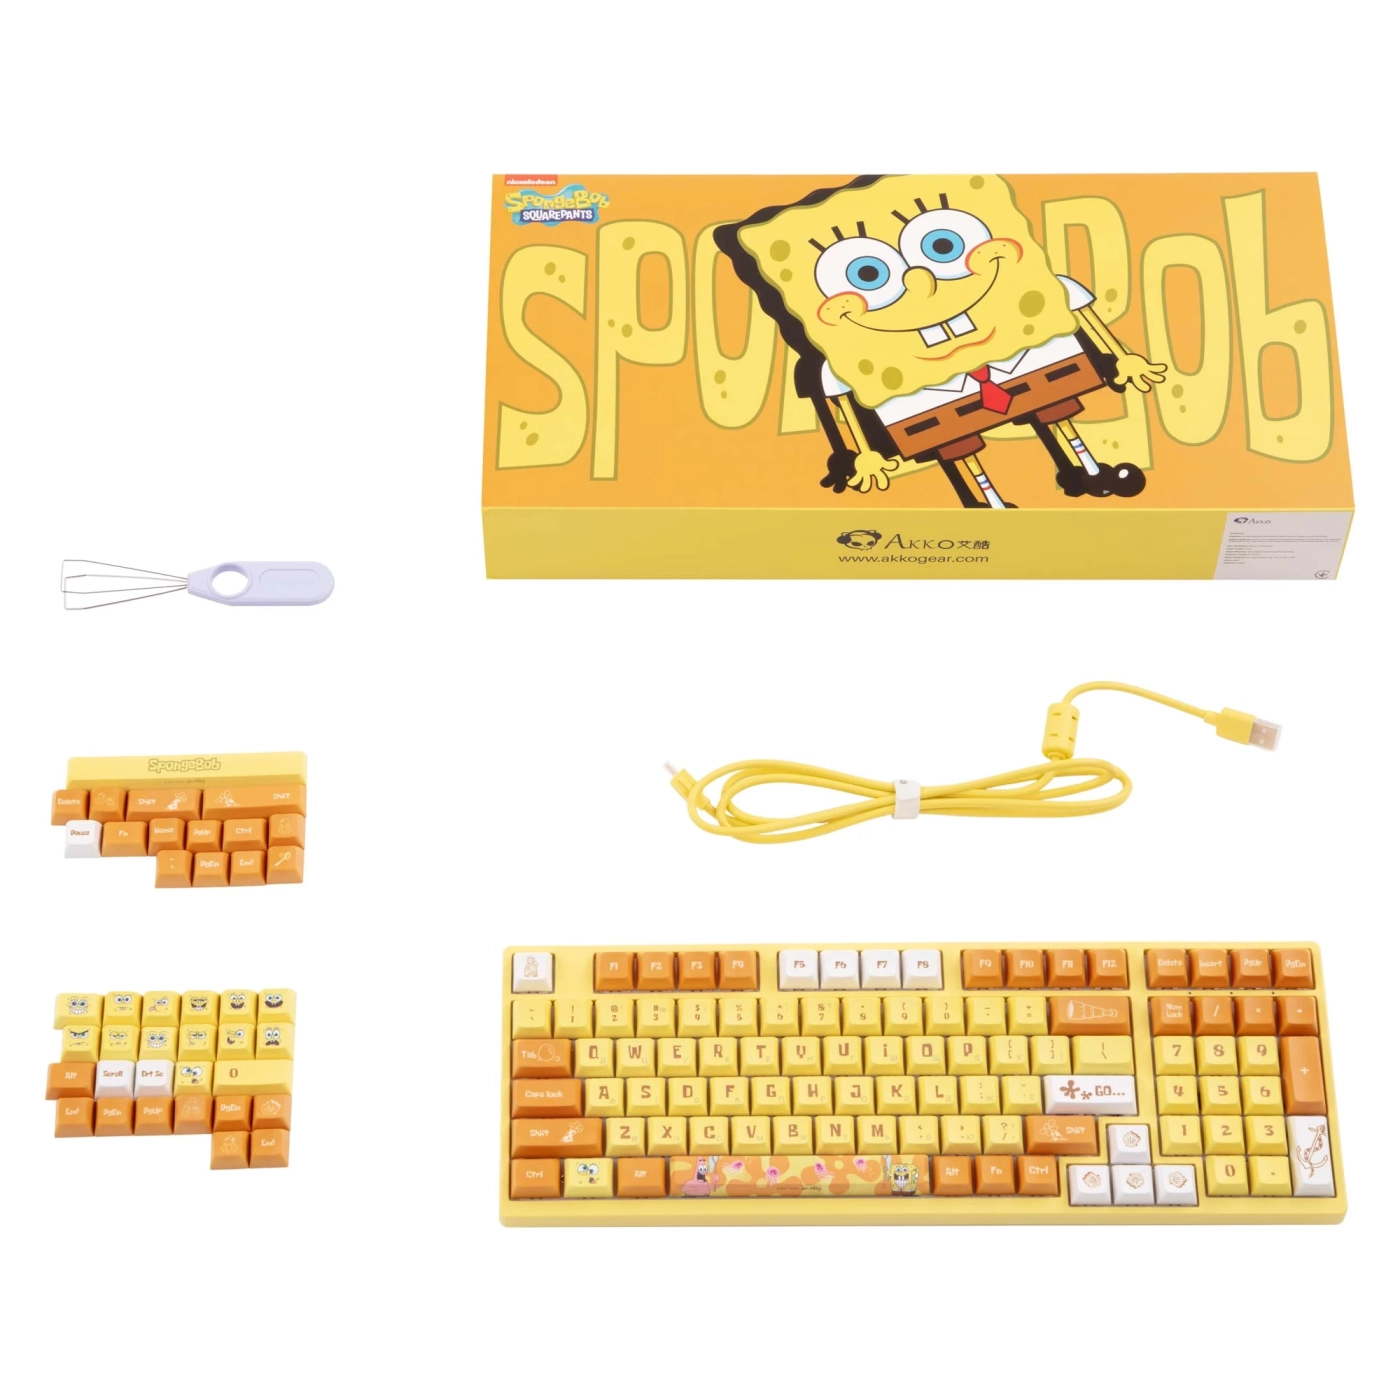 Купить Клавиатура Akko 3098S RGB Sponge Bob CS Sponge RGB (6925758613880) - фото 11